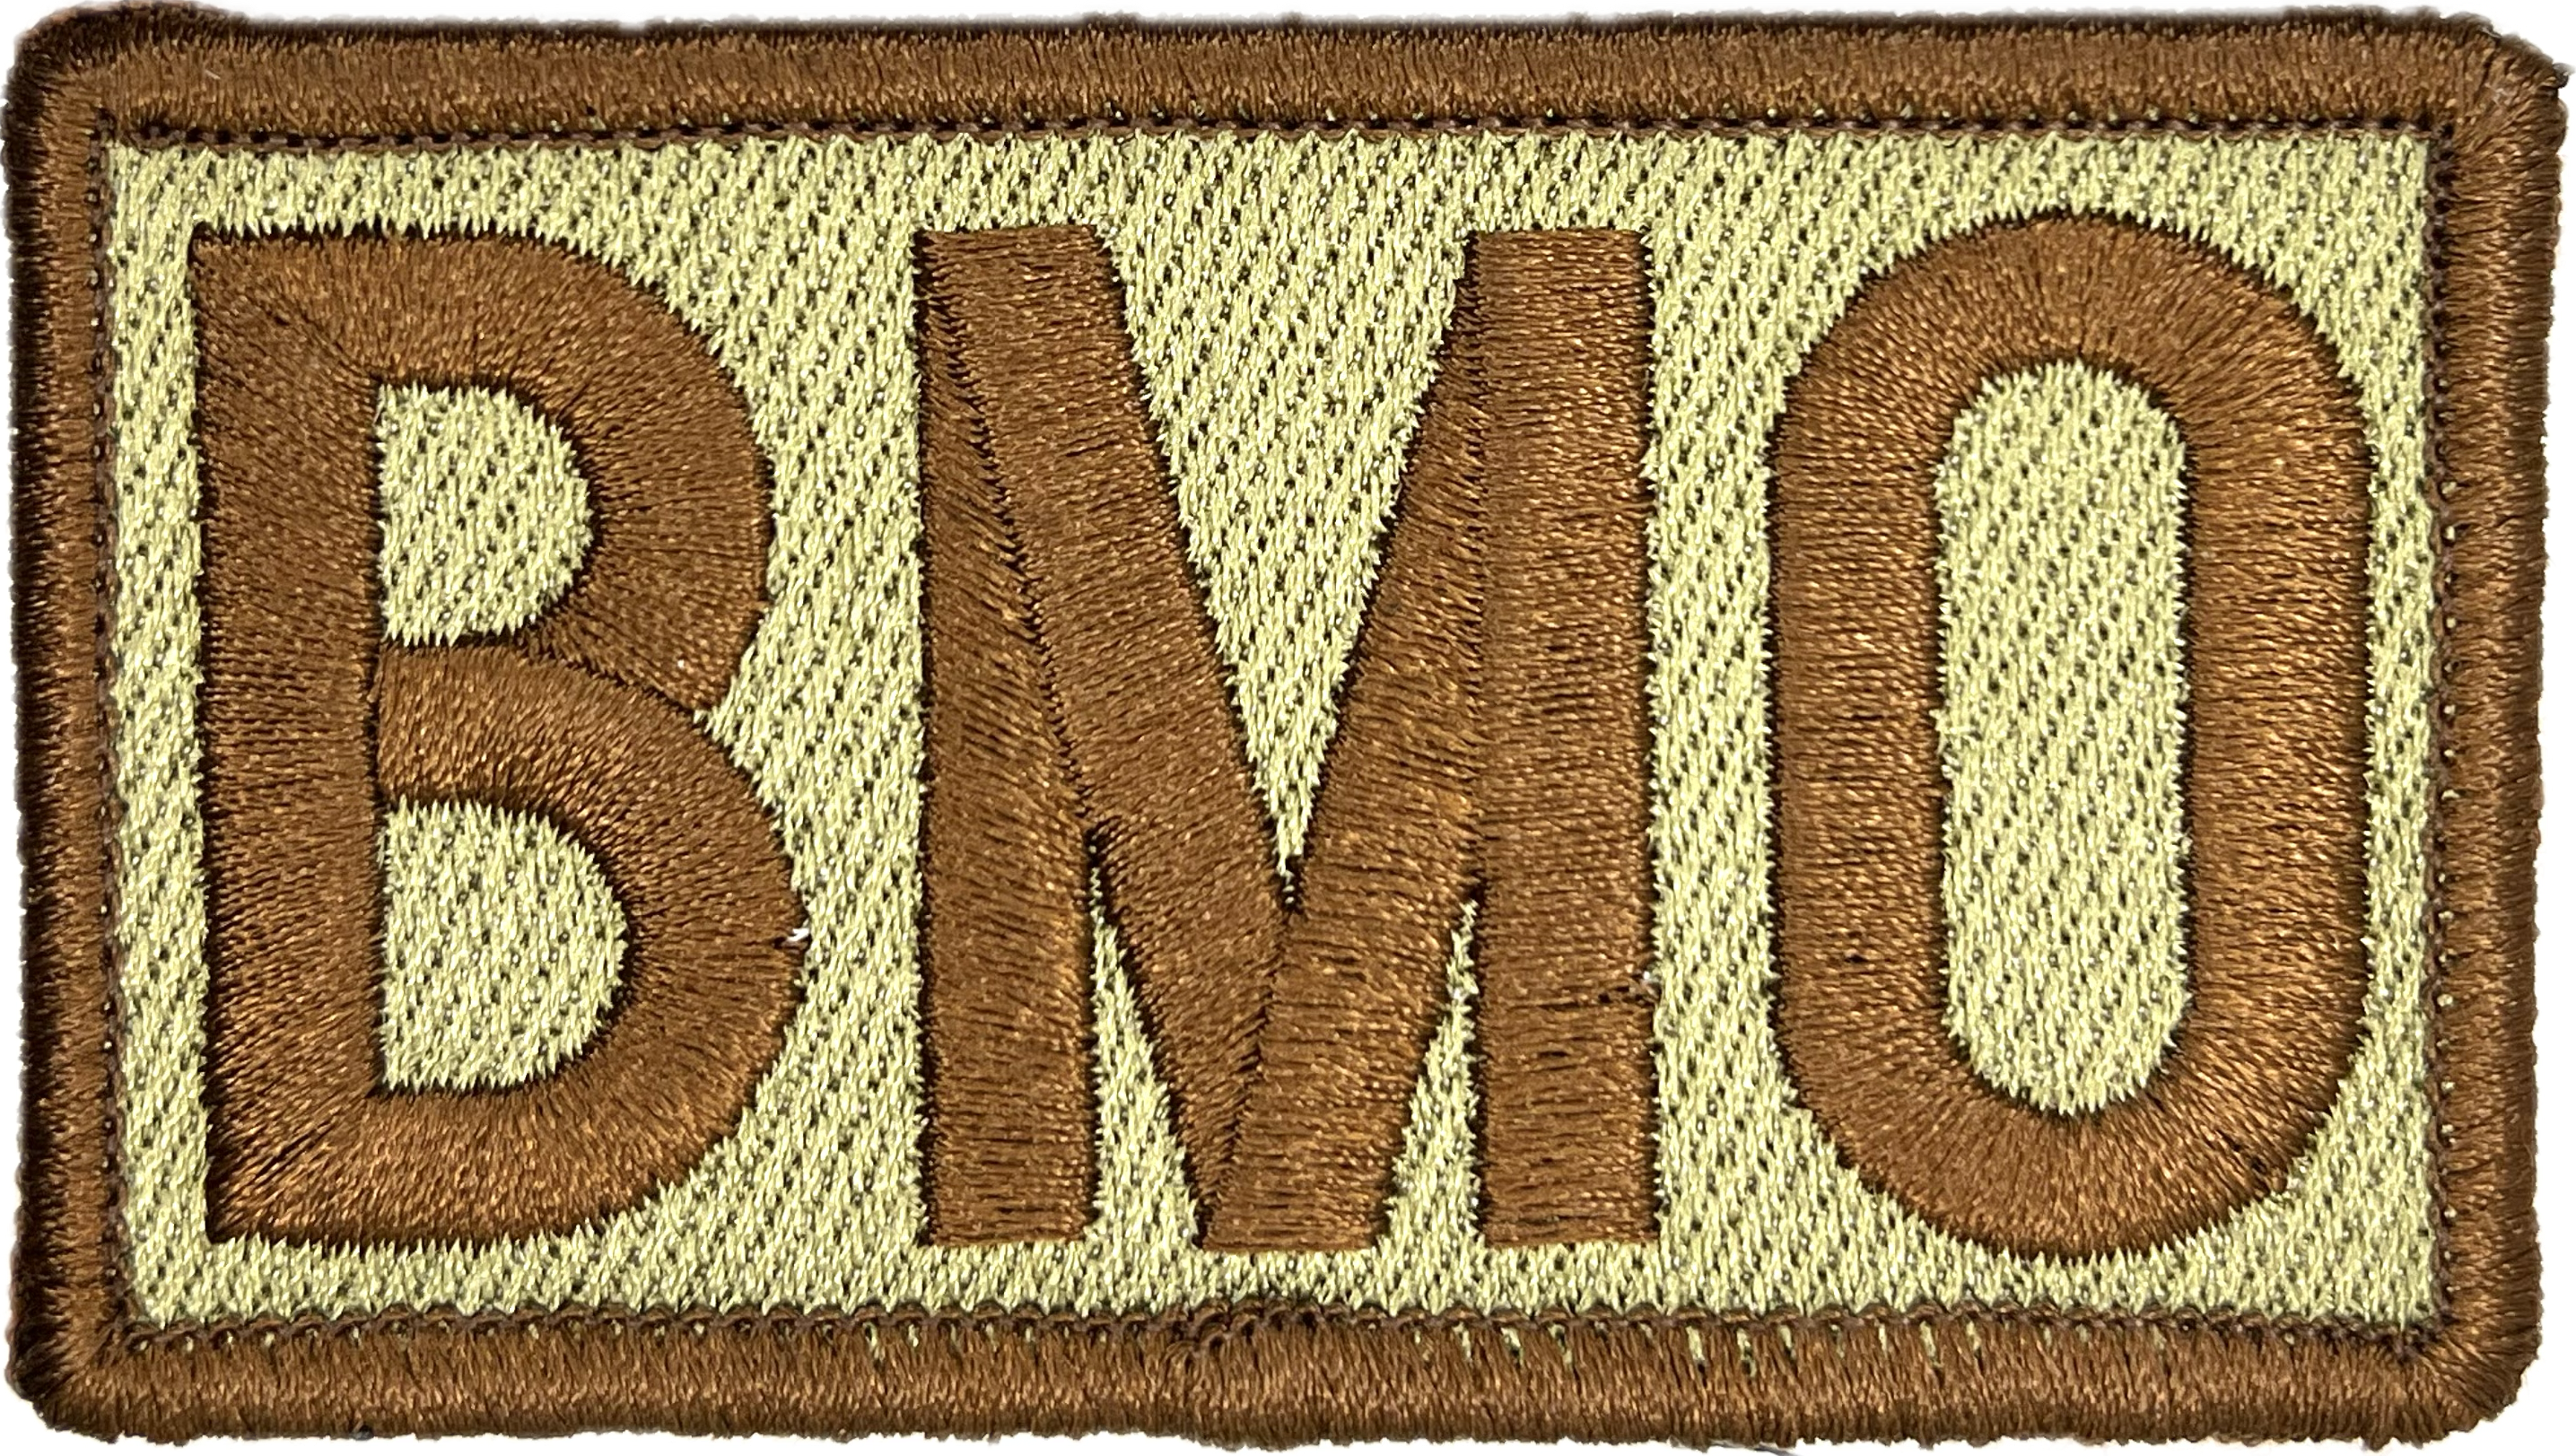 BMO - Duty Identifier Patch